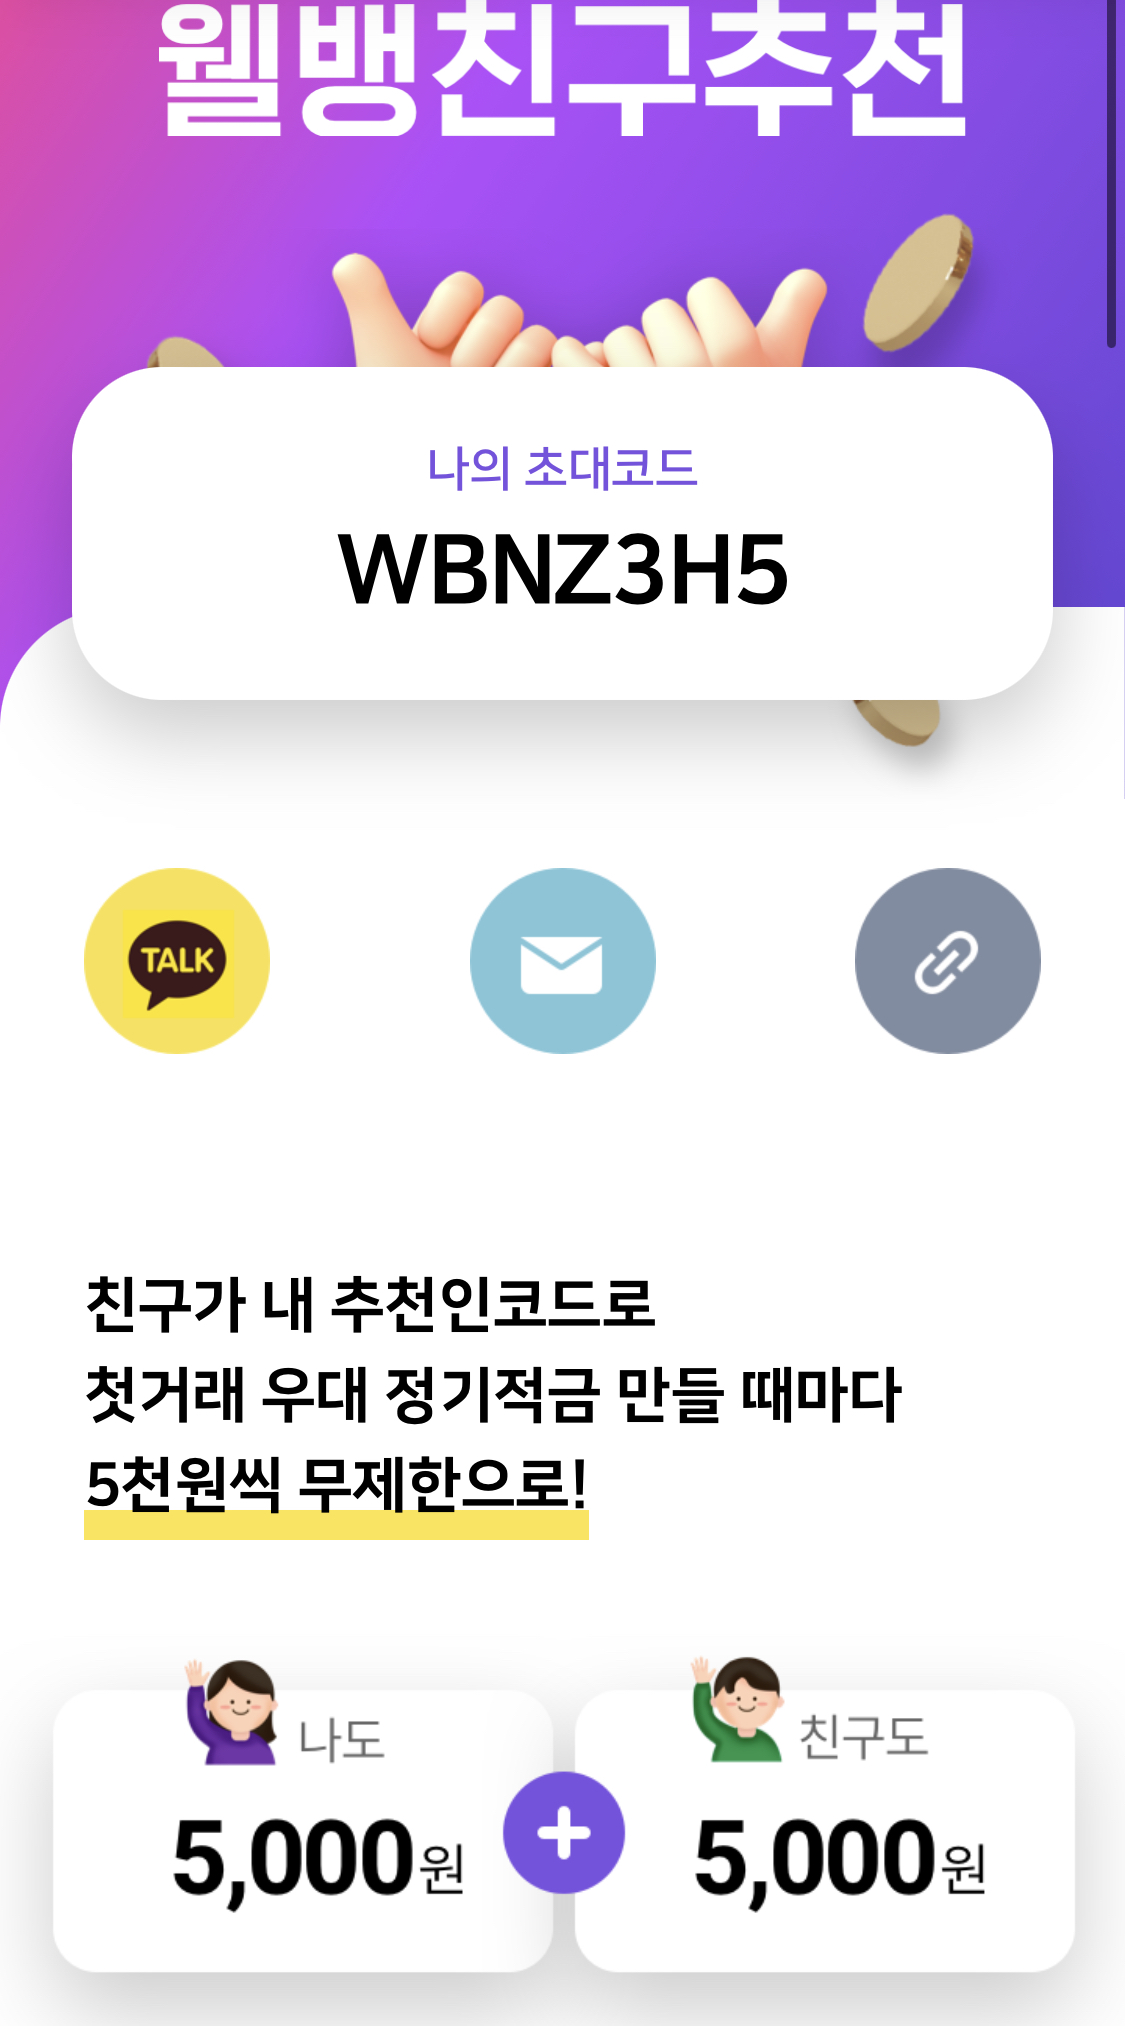 웰컴저축은행 추천인 WBNZ3H5